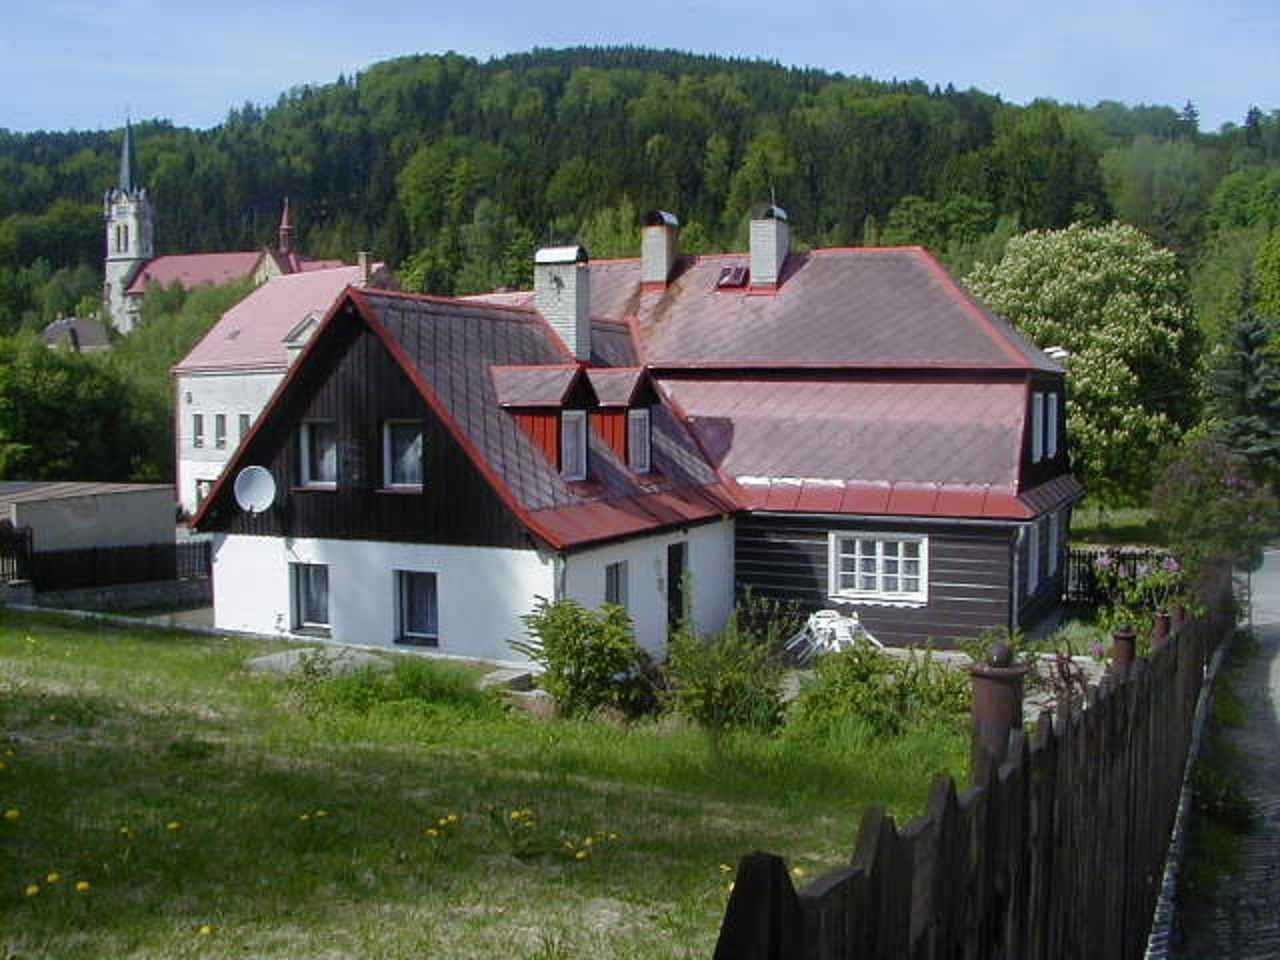 Ferienhaus mit Kaminofen in Hanglage Ferienhaus  Tschechische Republik